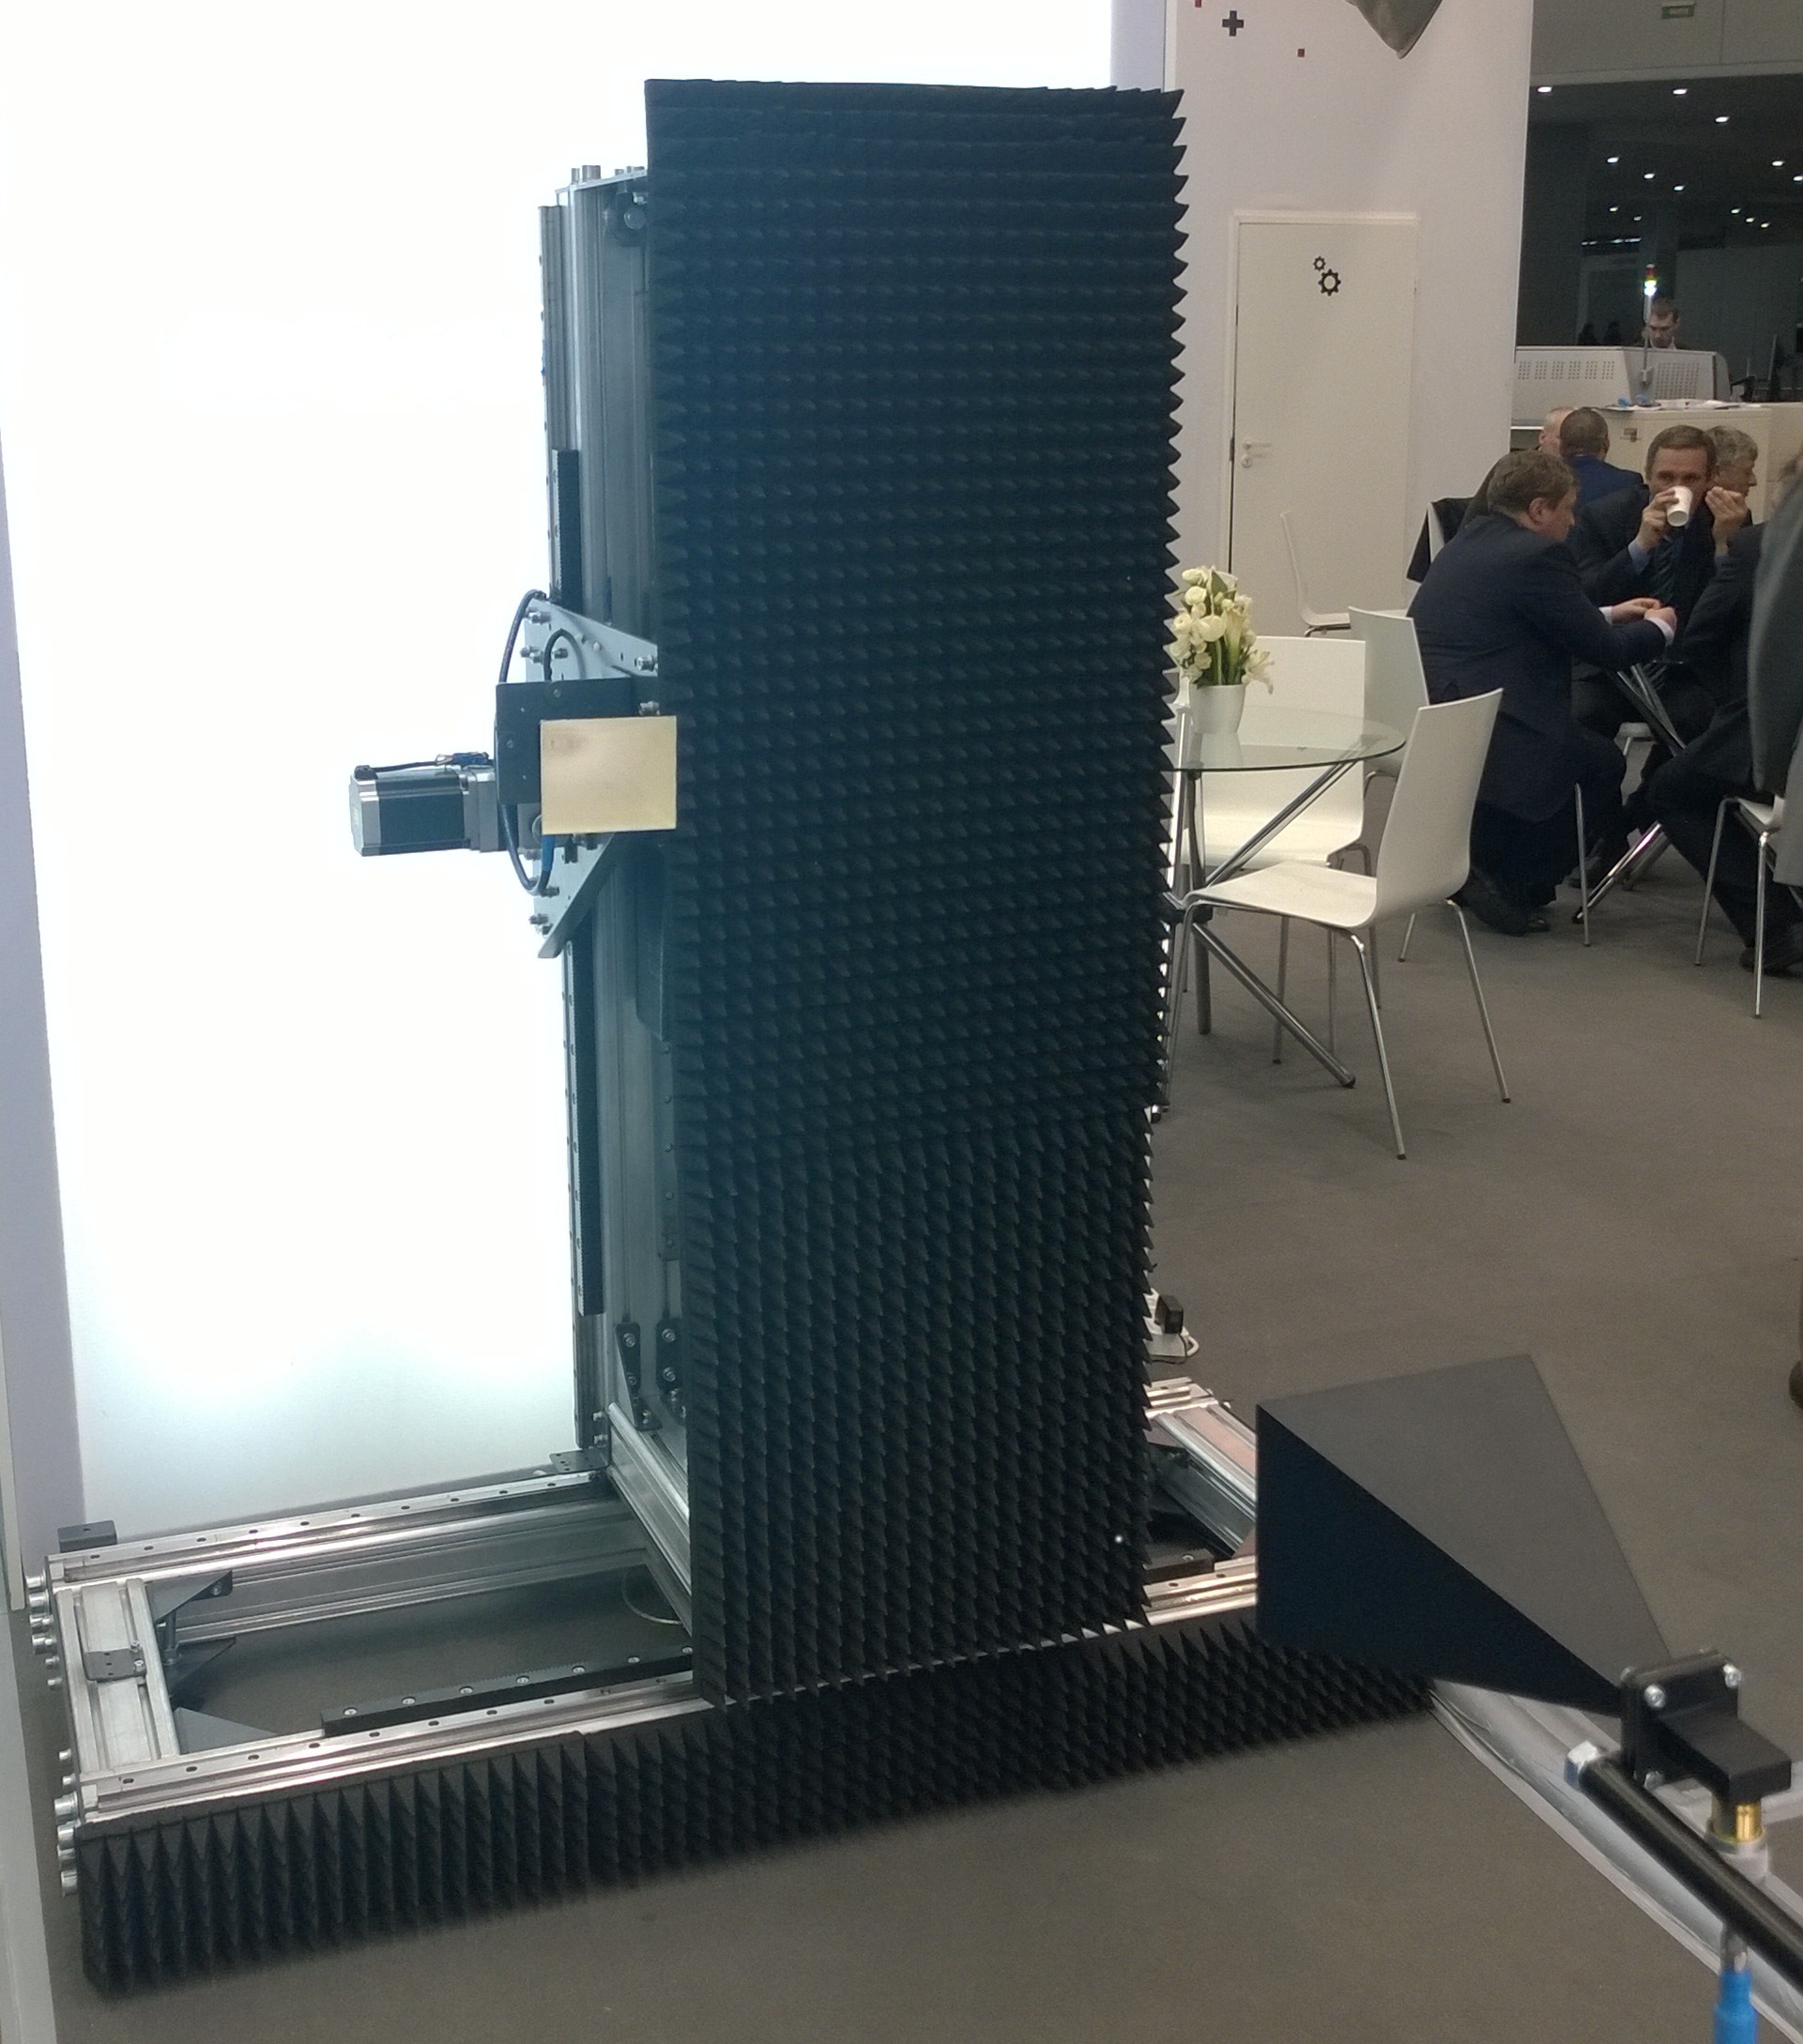 Планарный сканер серии PSN, производства компании Радиолайн, на выставке Экспоэлектроника 2014